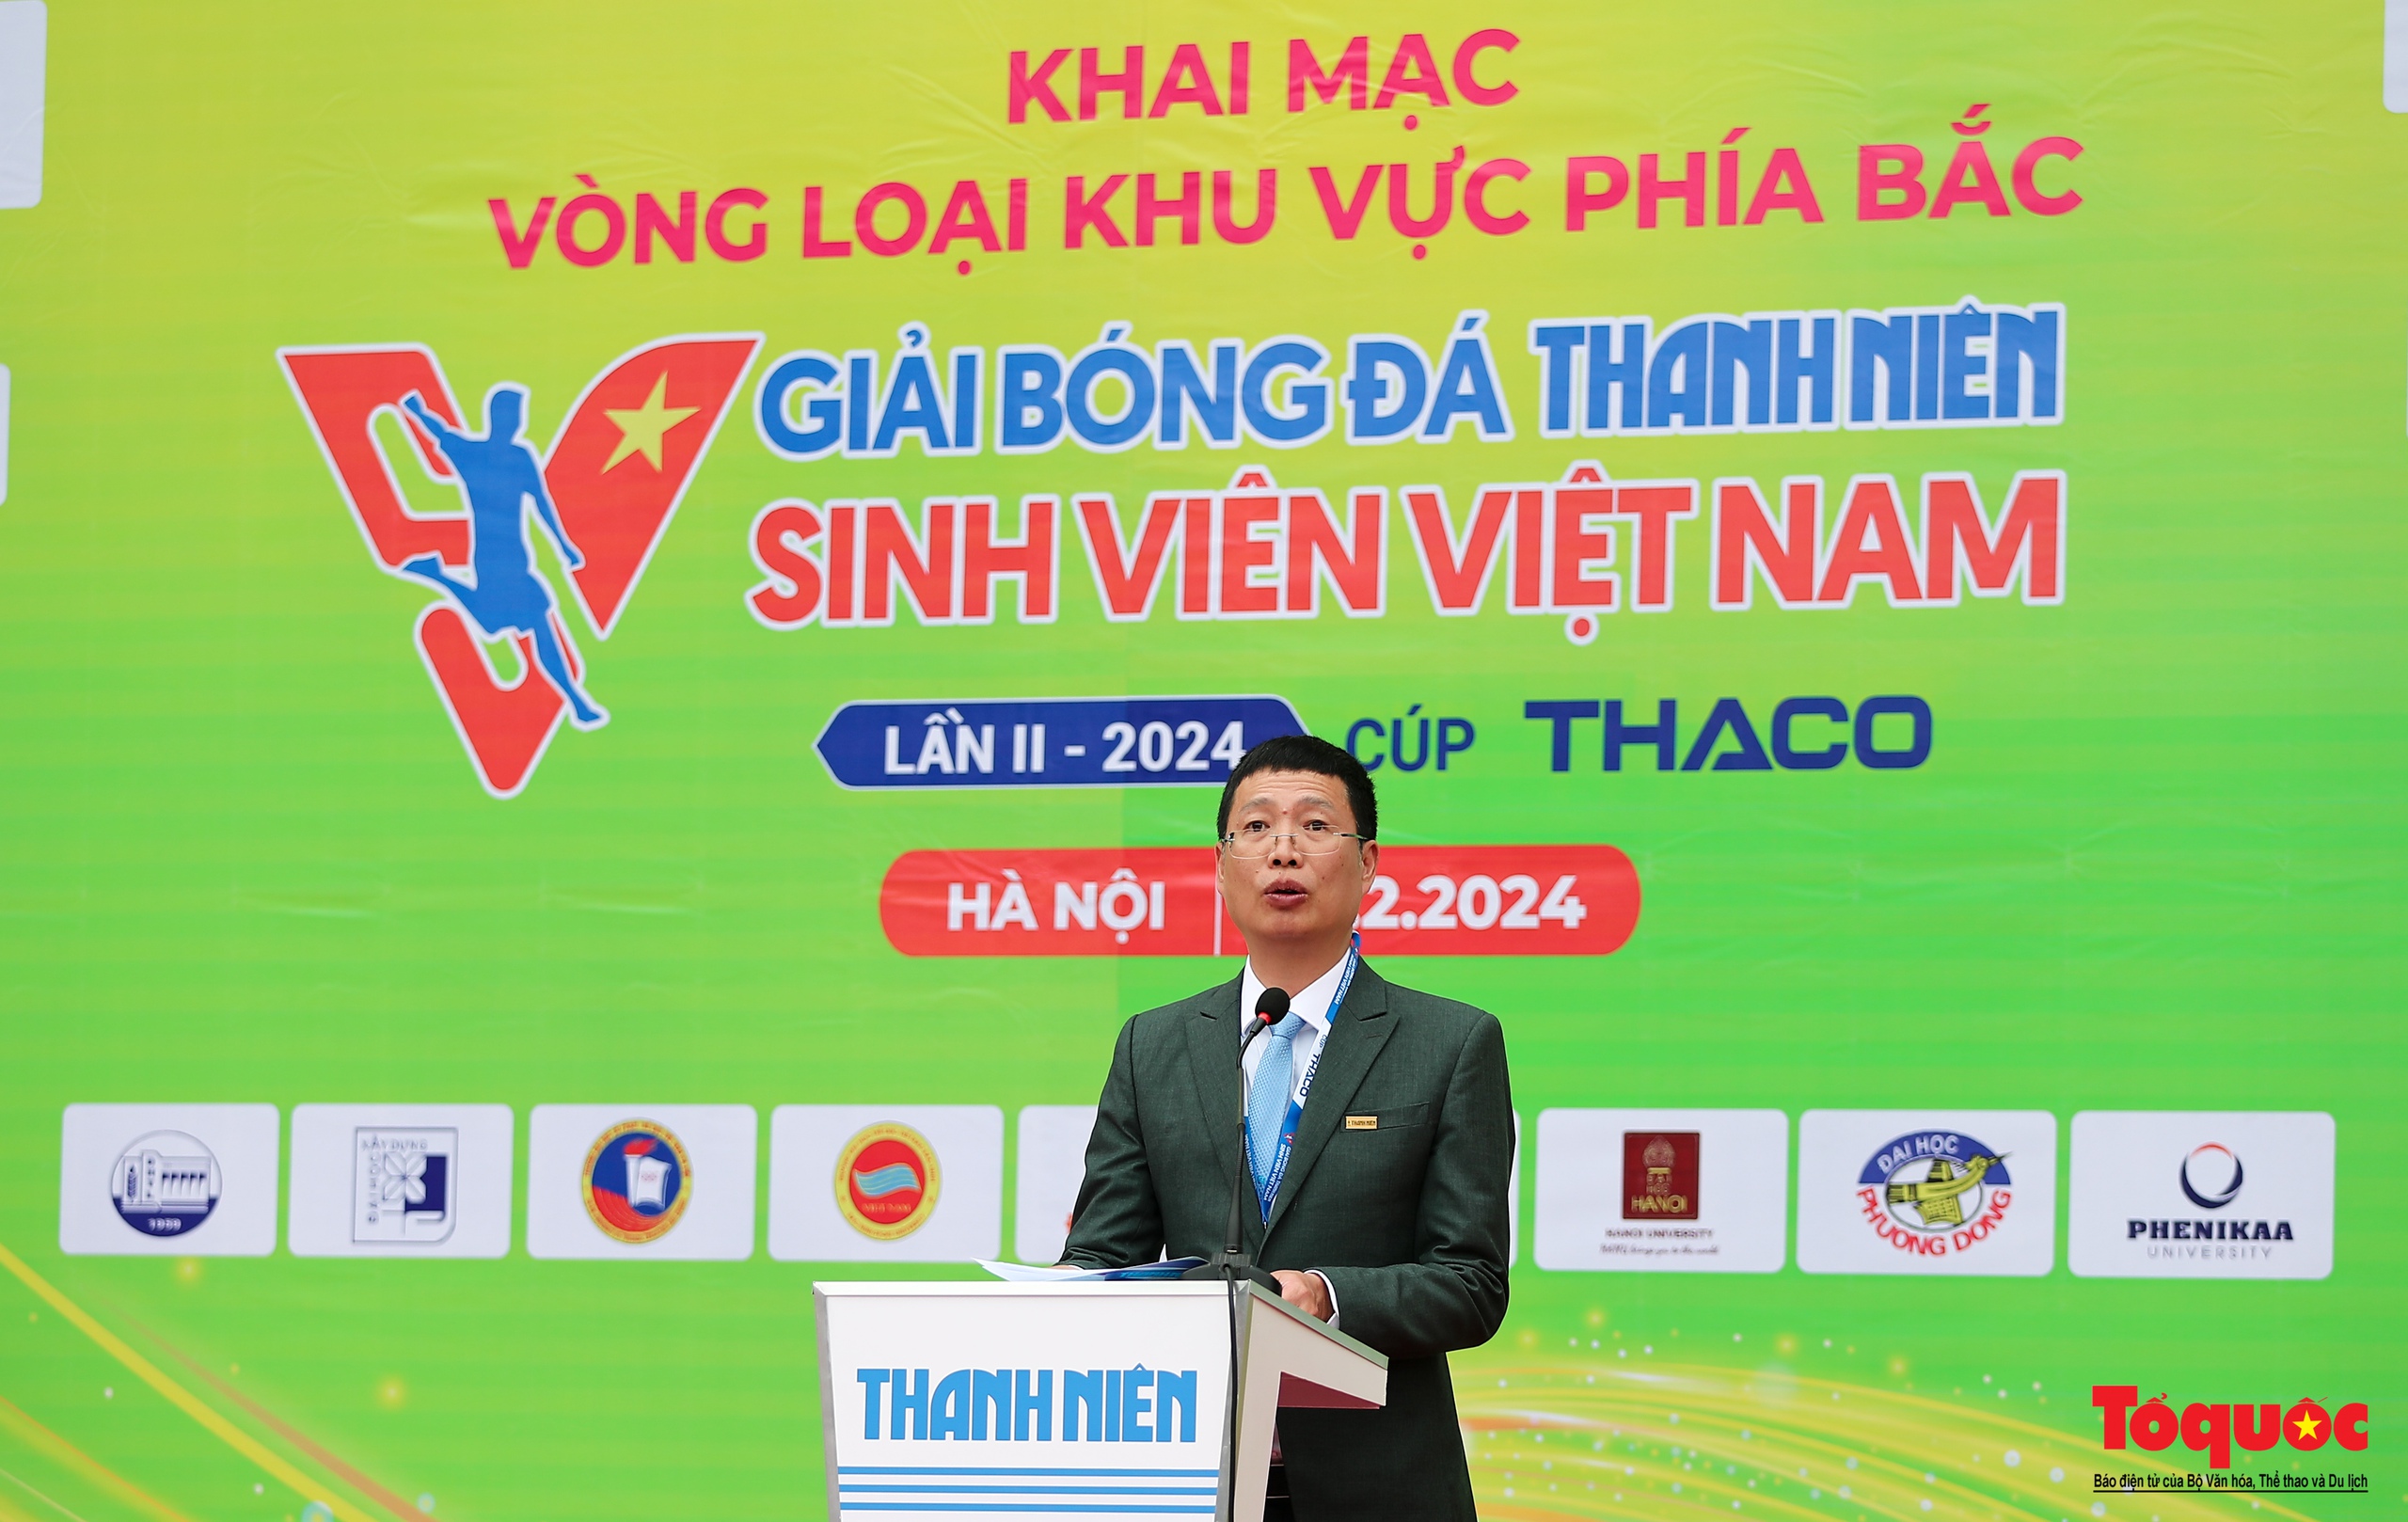 Hà Nội: Khai mạc vòng loại giải bóng đá Thanh Niên sinh viên Việt Nam lần II - 2024 - Ảnh 5.